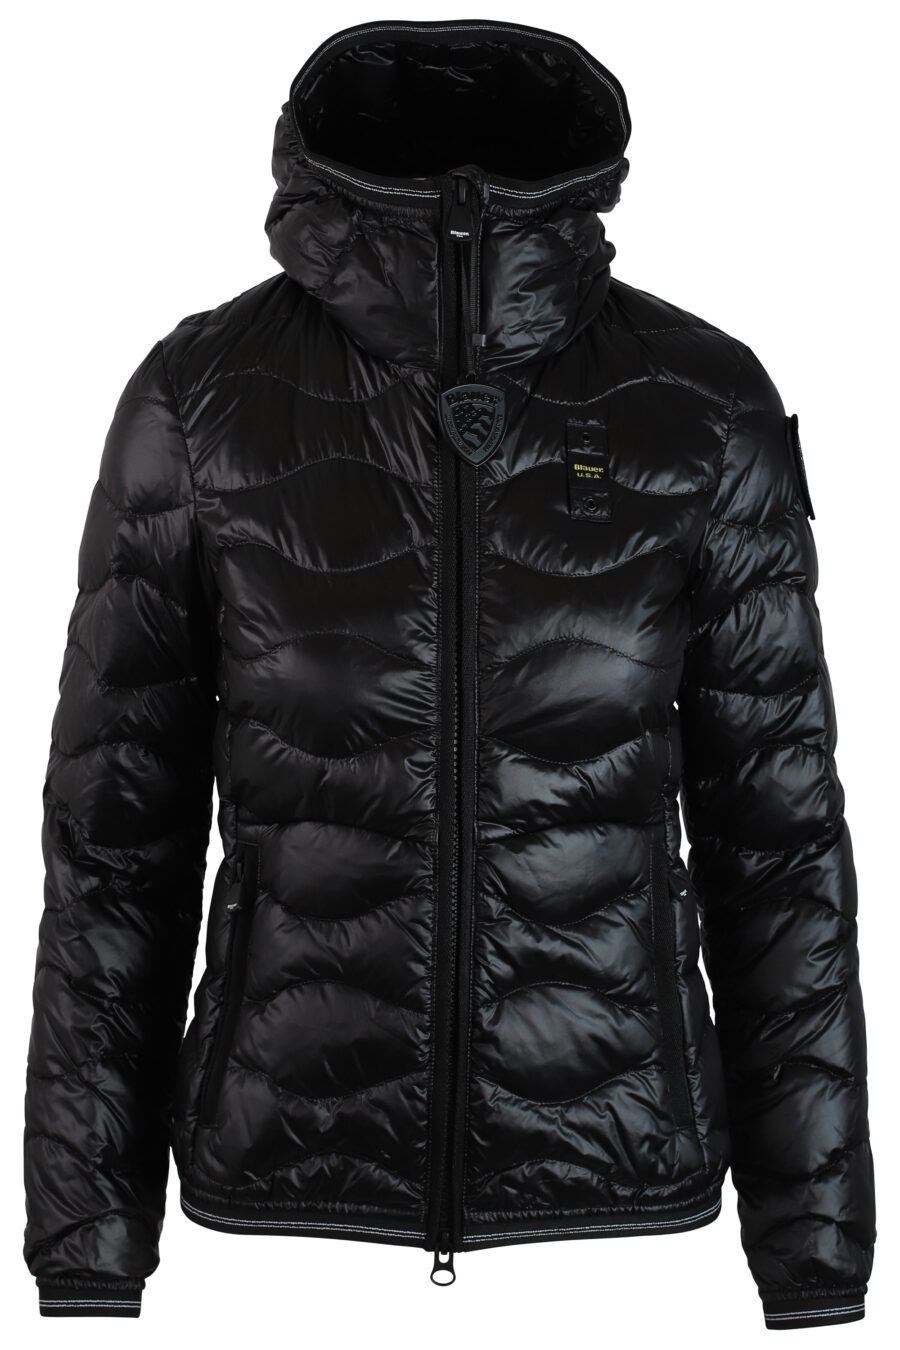 Schwarze Jacke mit Kapuze und Wellenlinien mit seitlichem Aufnäher - IMG 0223